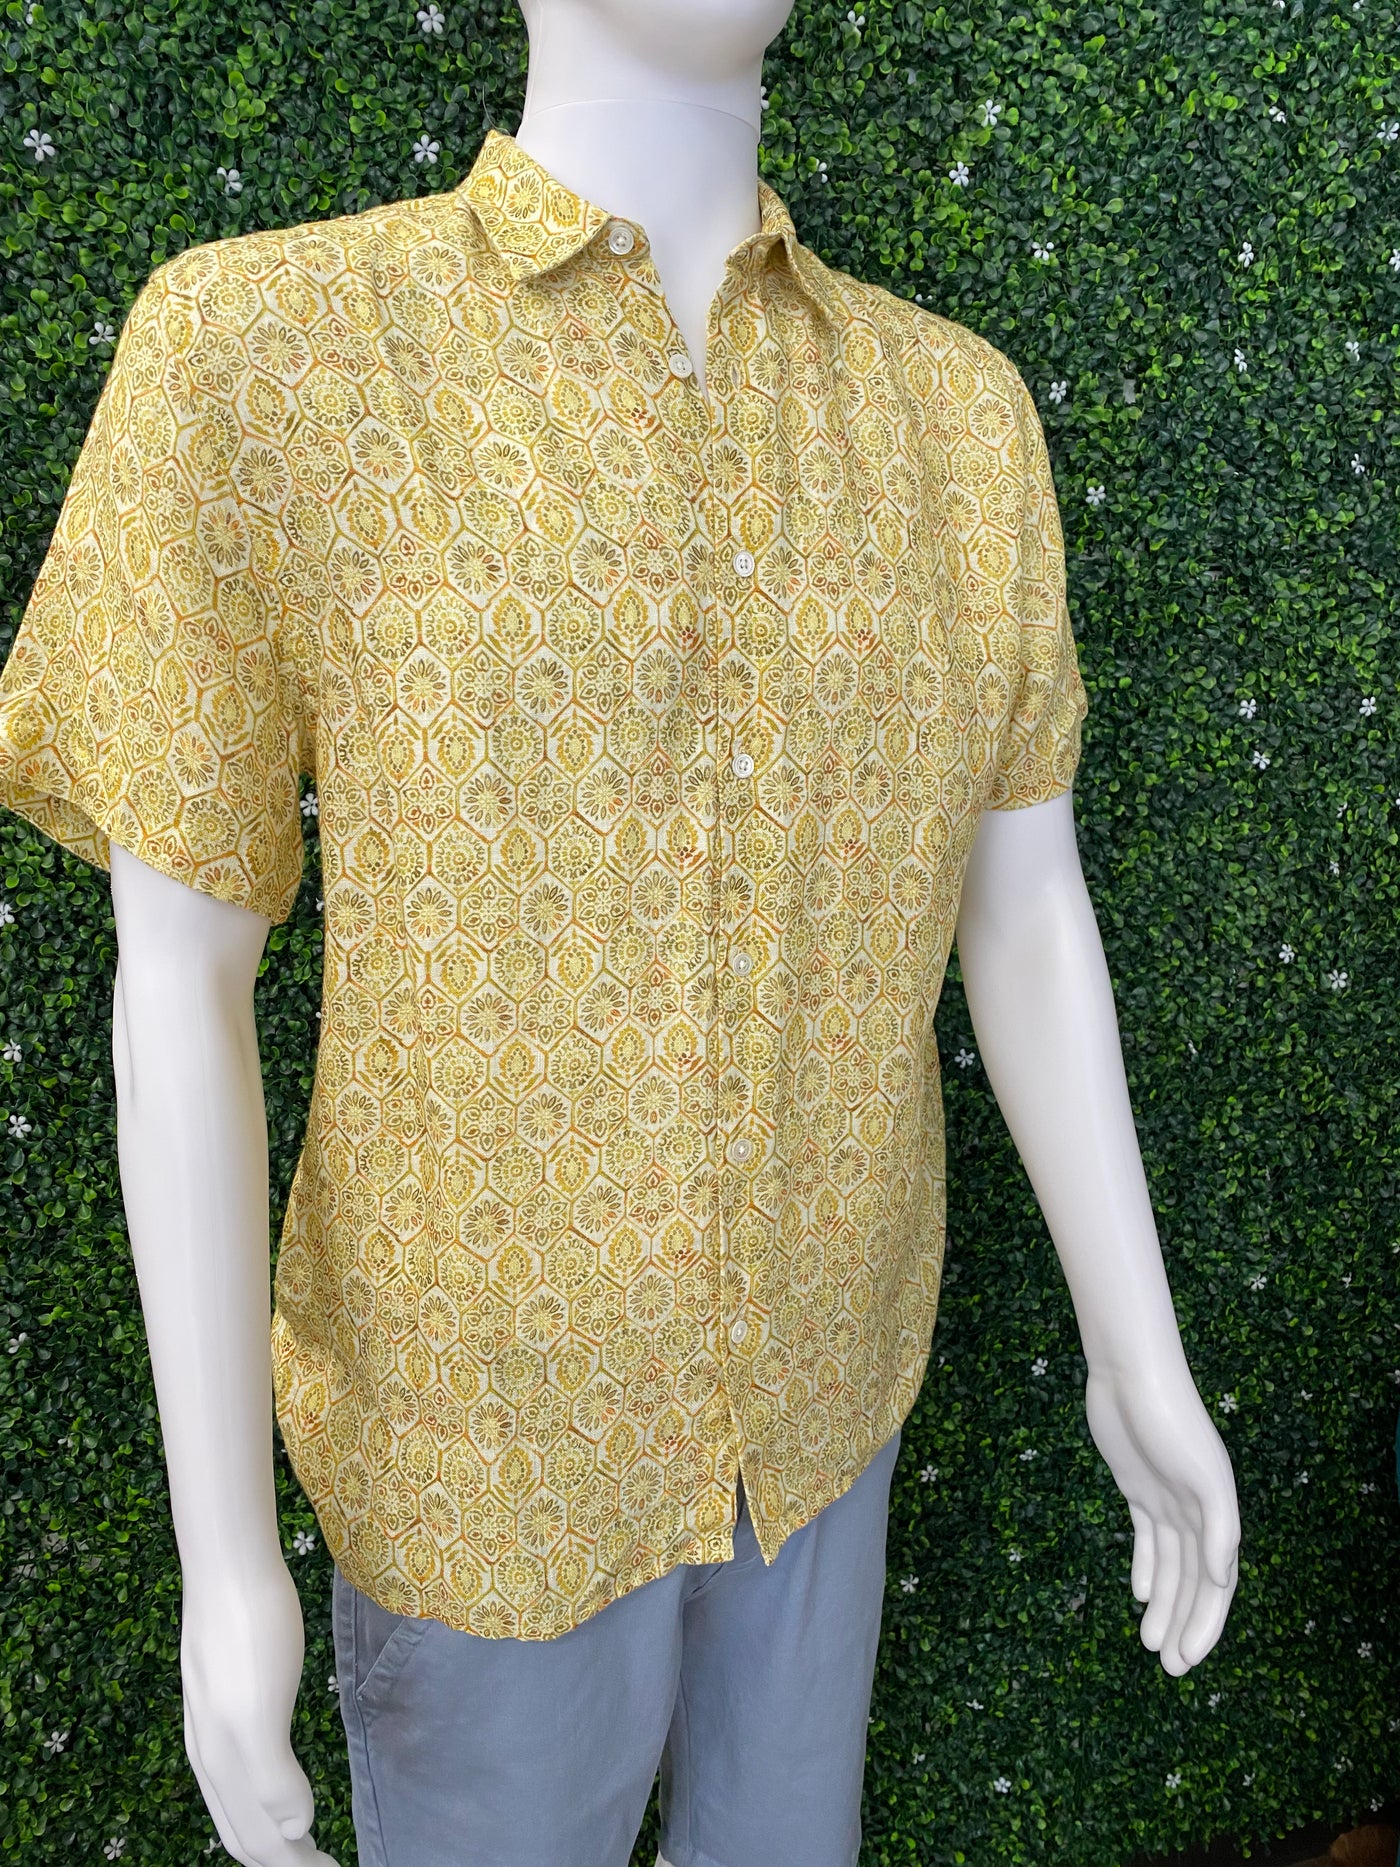 Men's European Linen Yellow Print Shirt